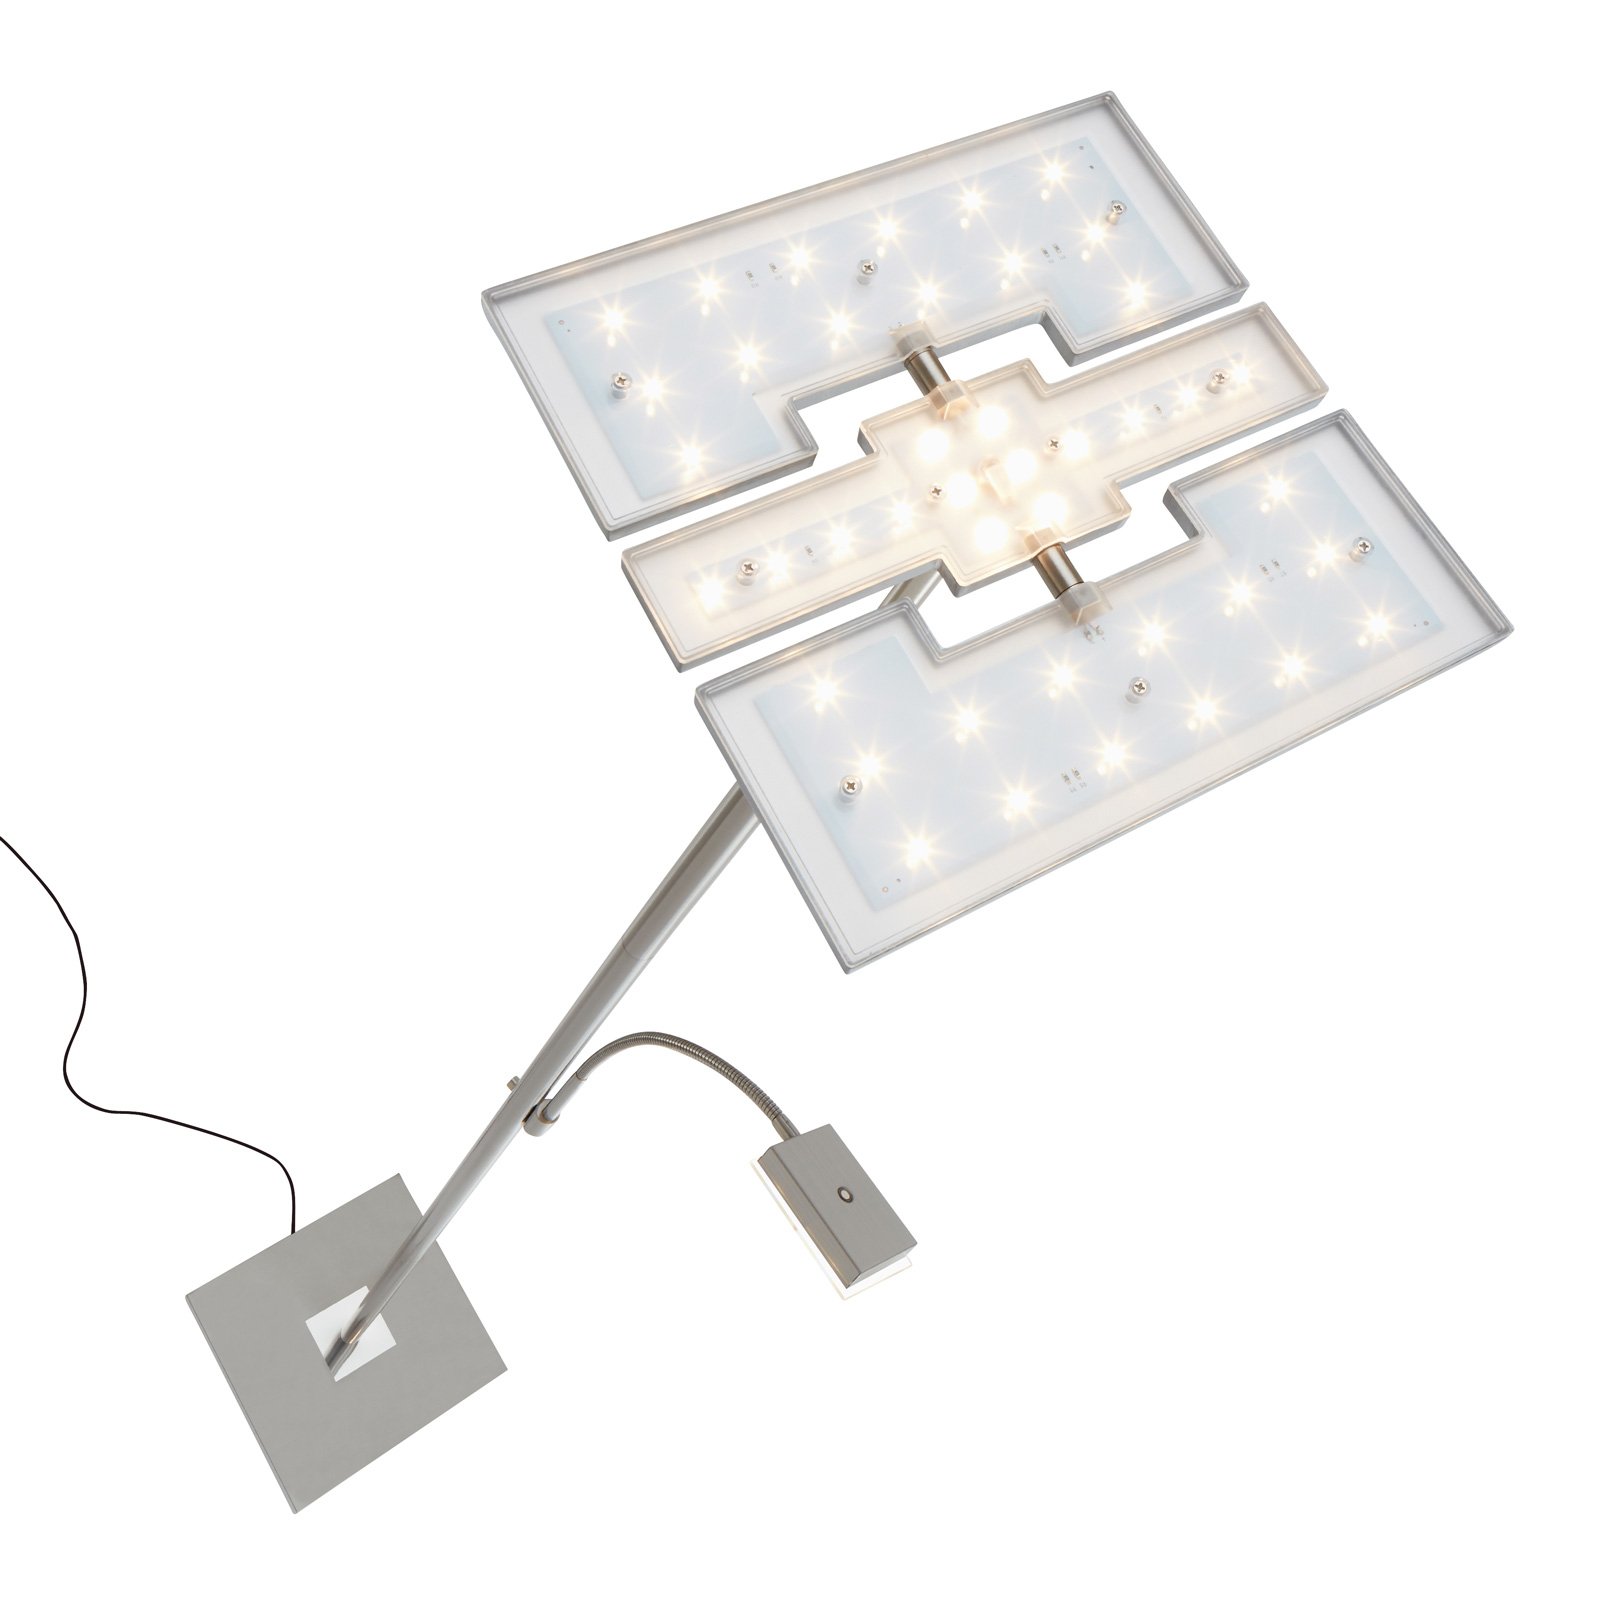 Stropní LED svítidlo Floor 1328-022, hranaté, čtecí rameno